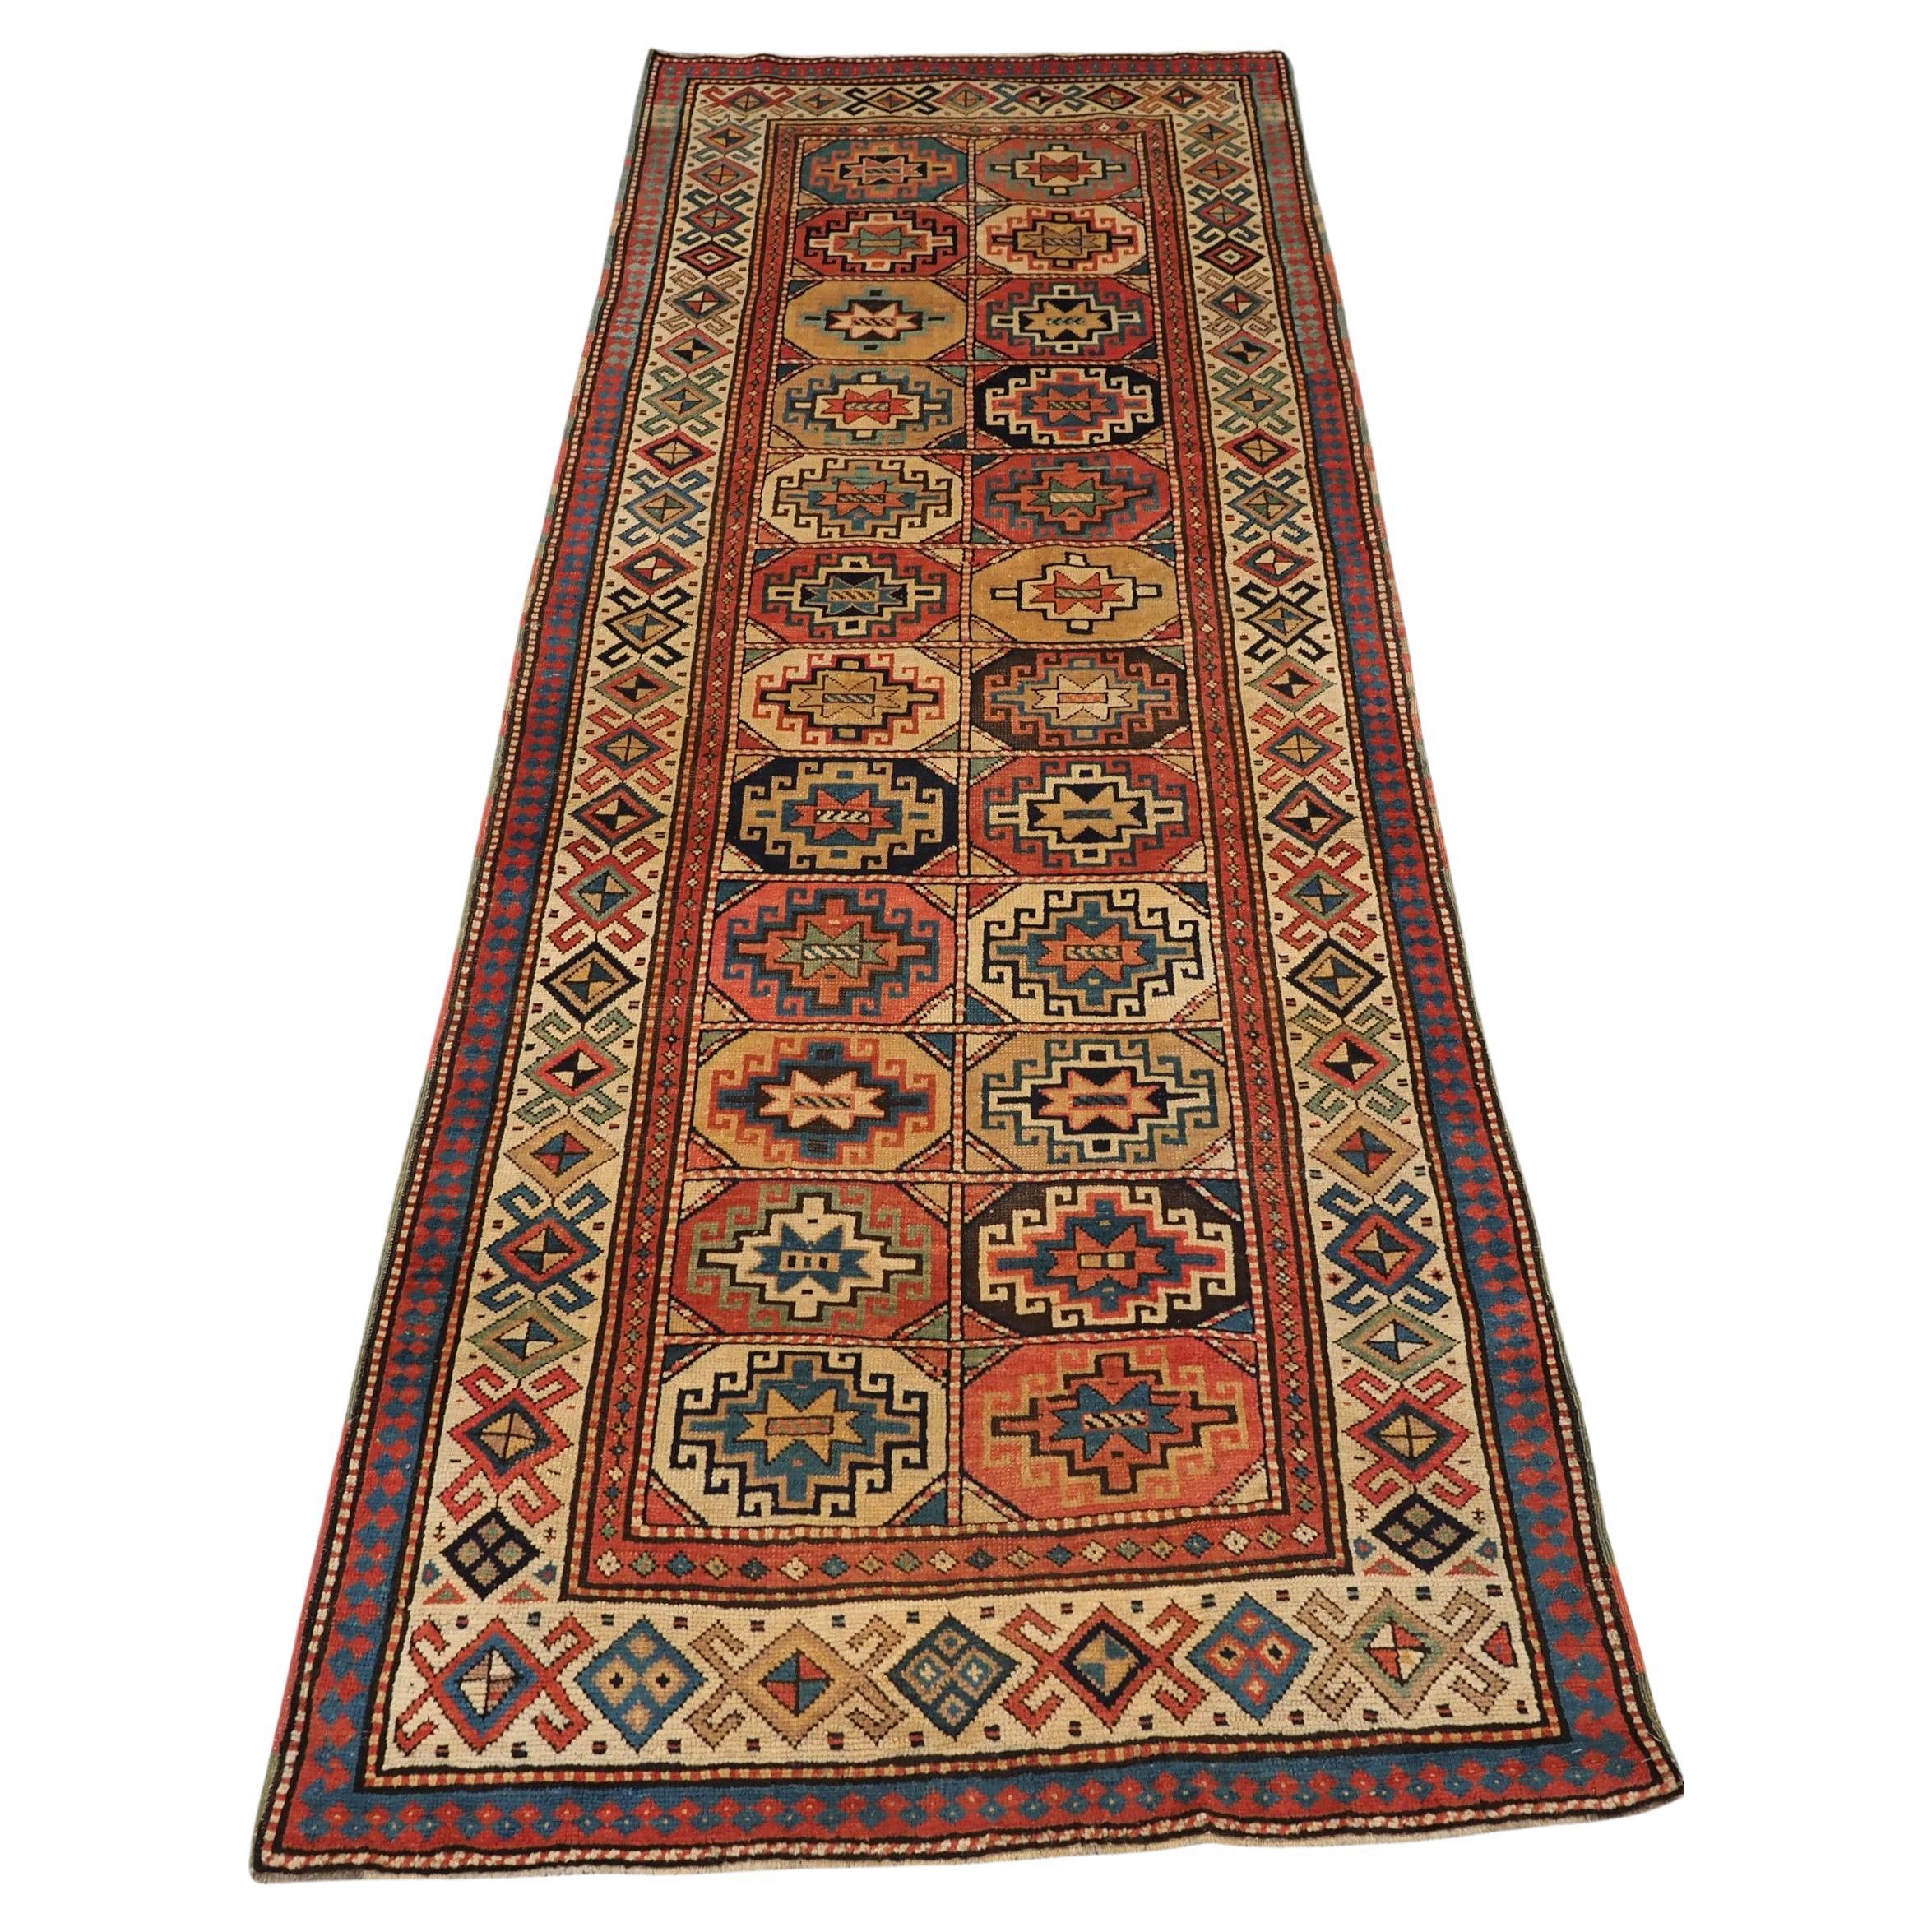 Antique tapis long Moghan Kazak du South Antiques avec des guls de Memling dans des octogones.